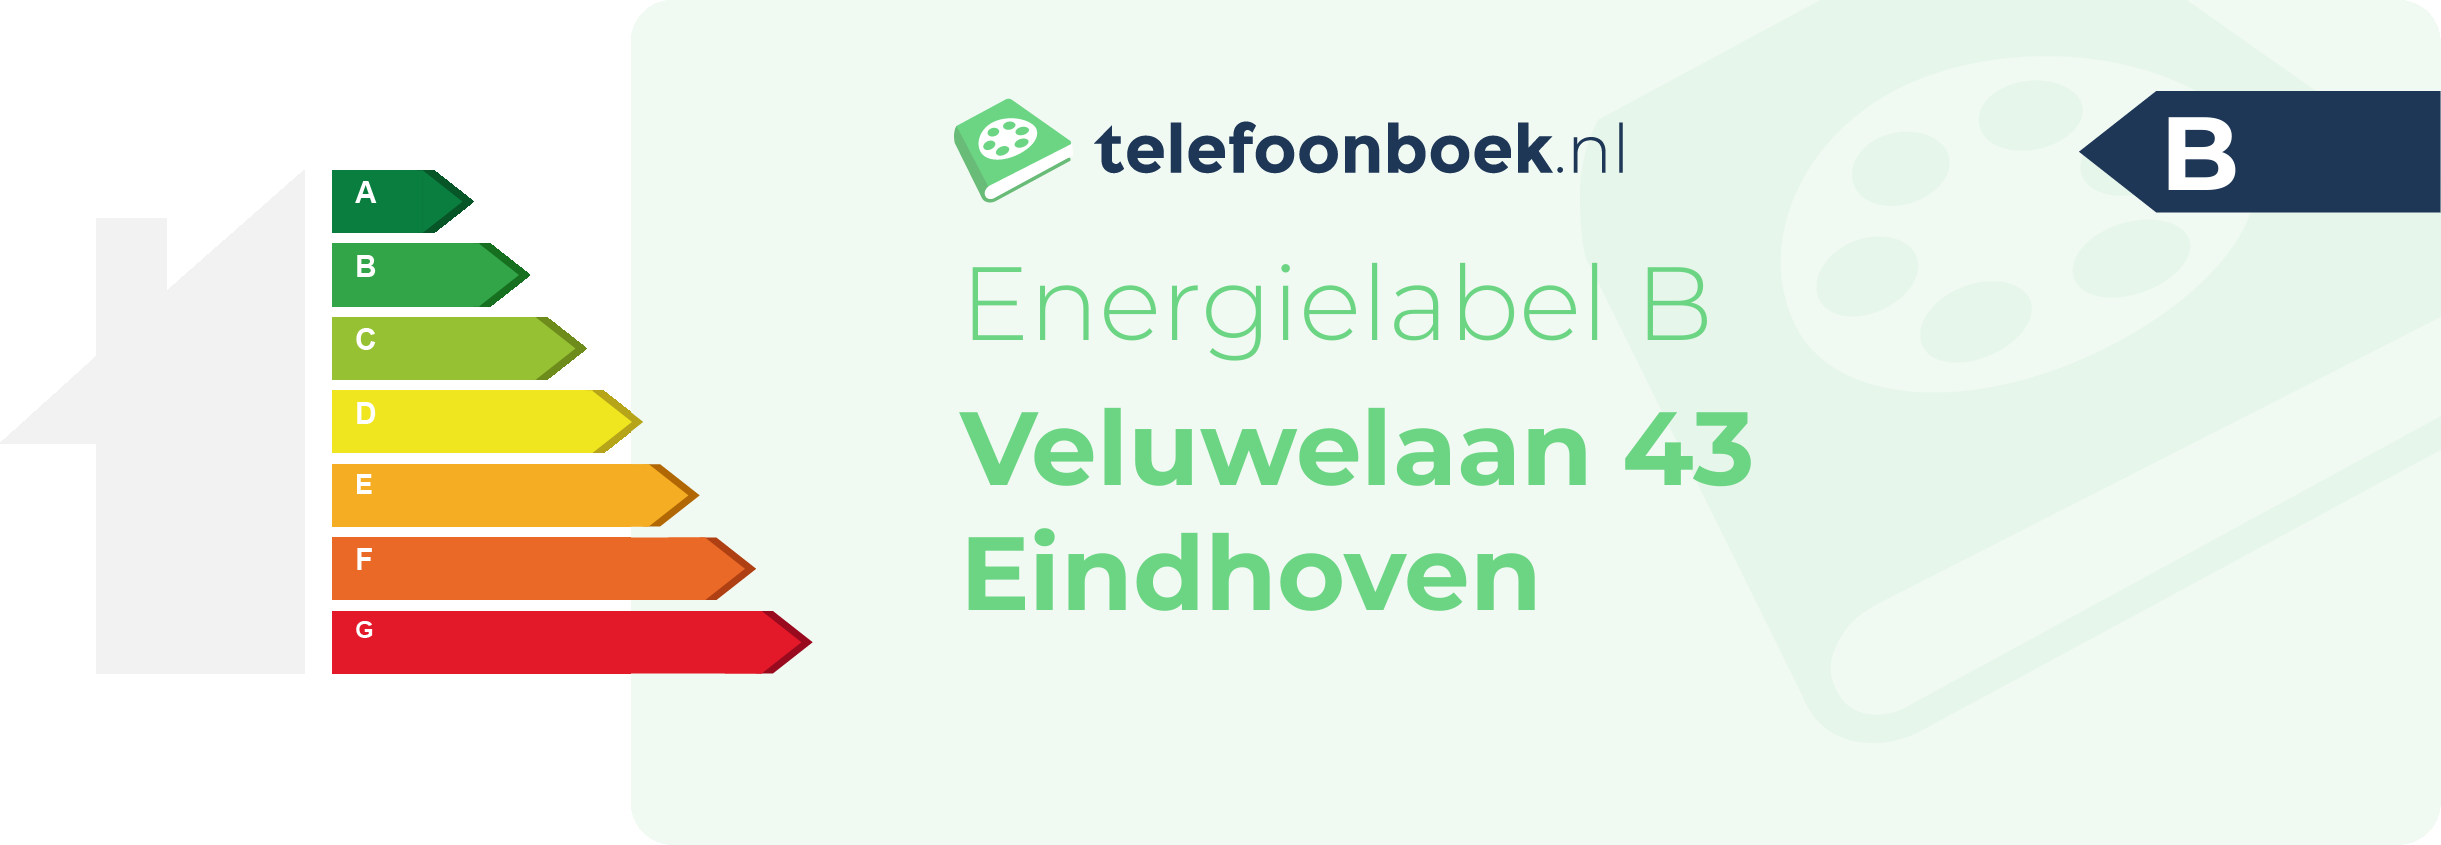 Energielabel Veluwelaan 43 Eindhoven